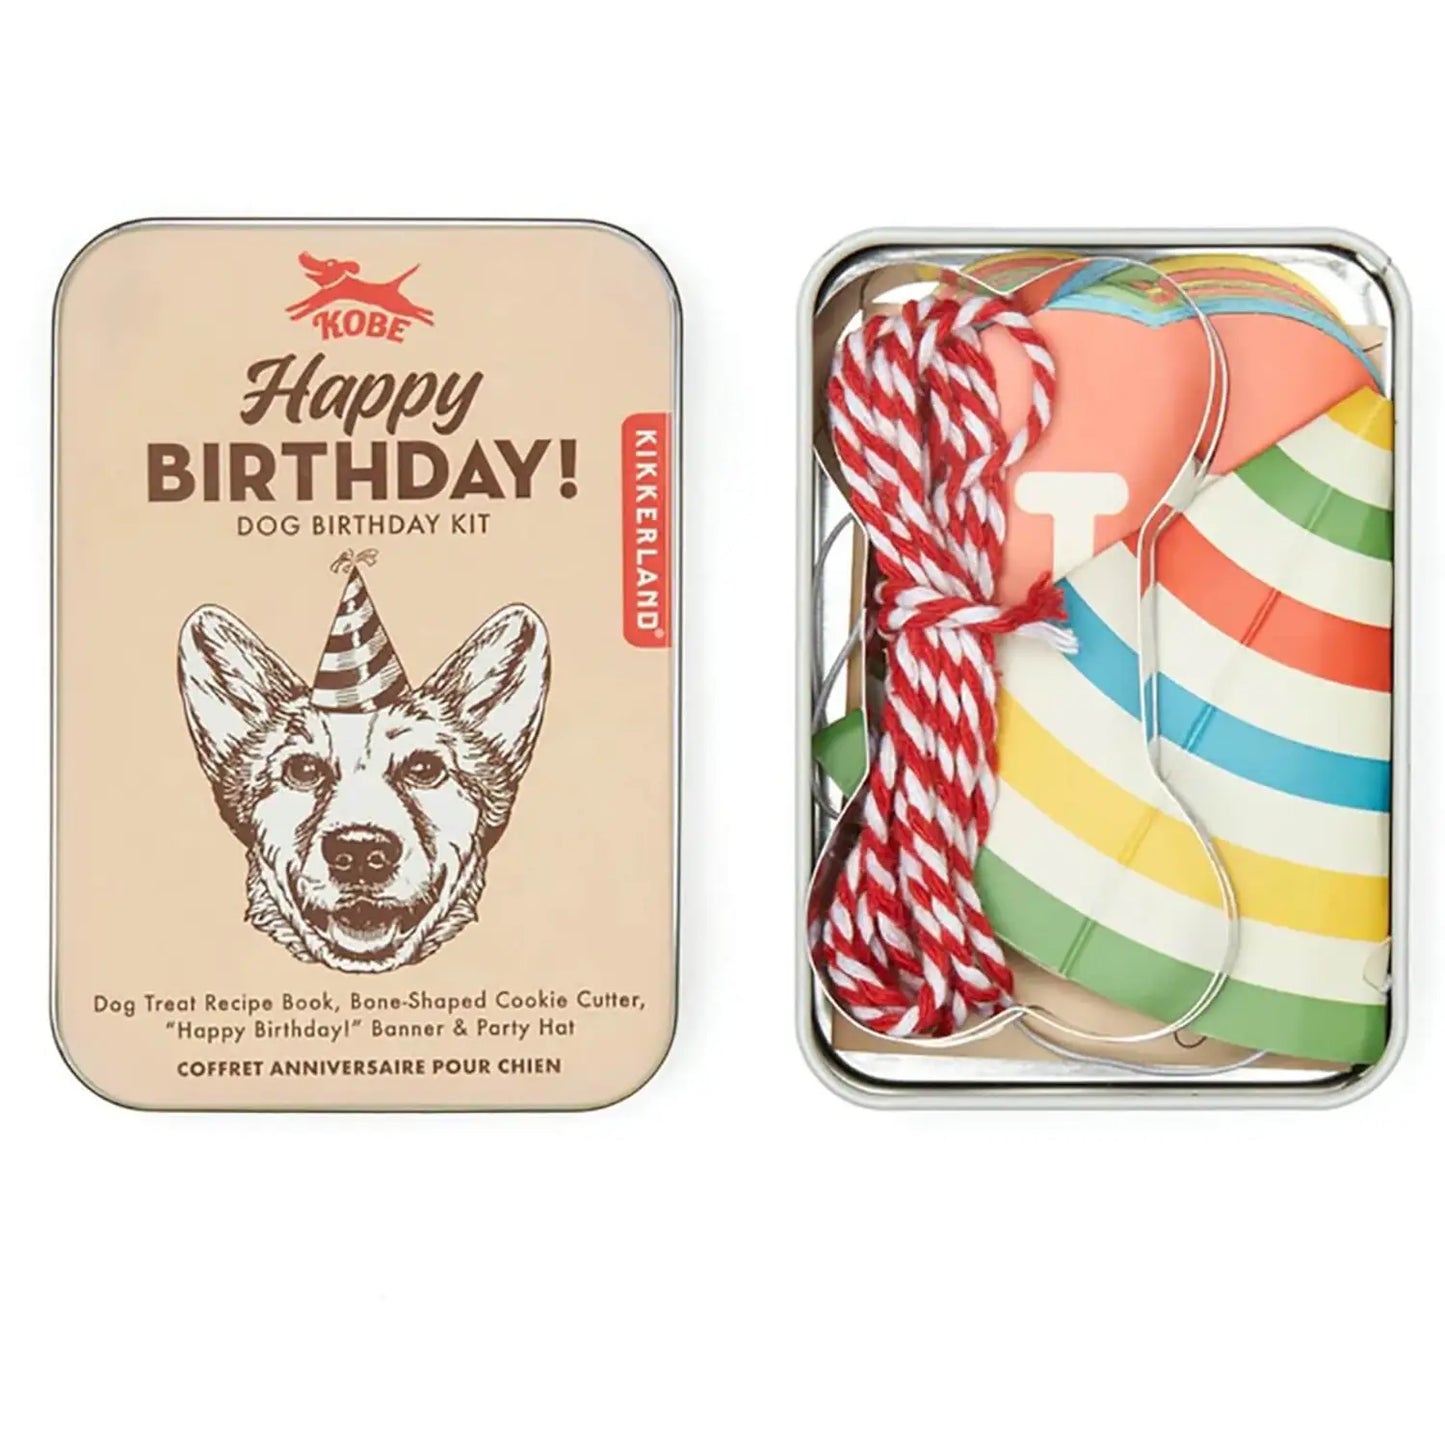 Happy Birthday Dog Birthday Kit